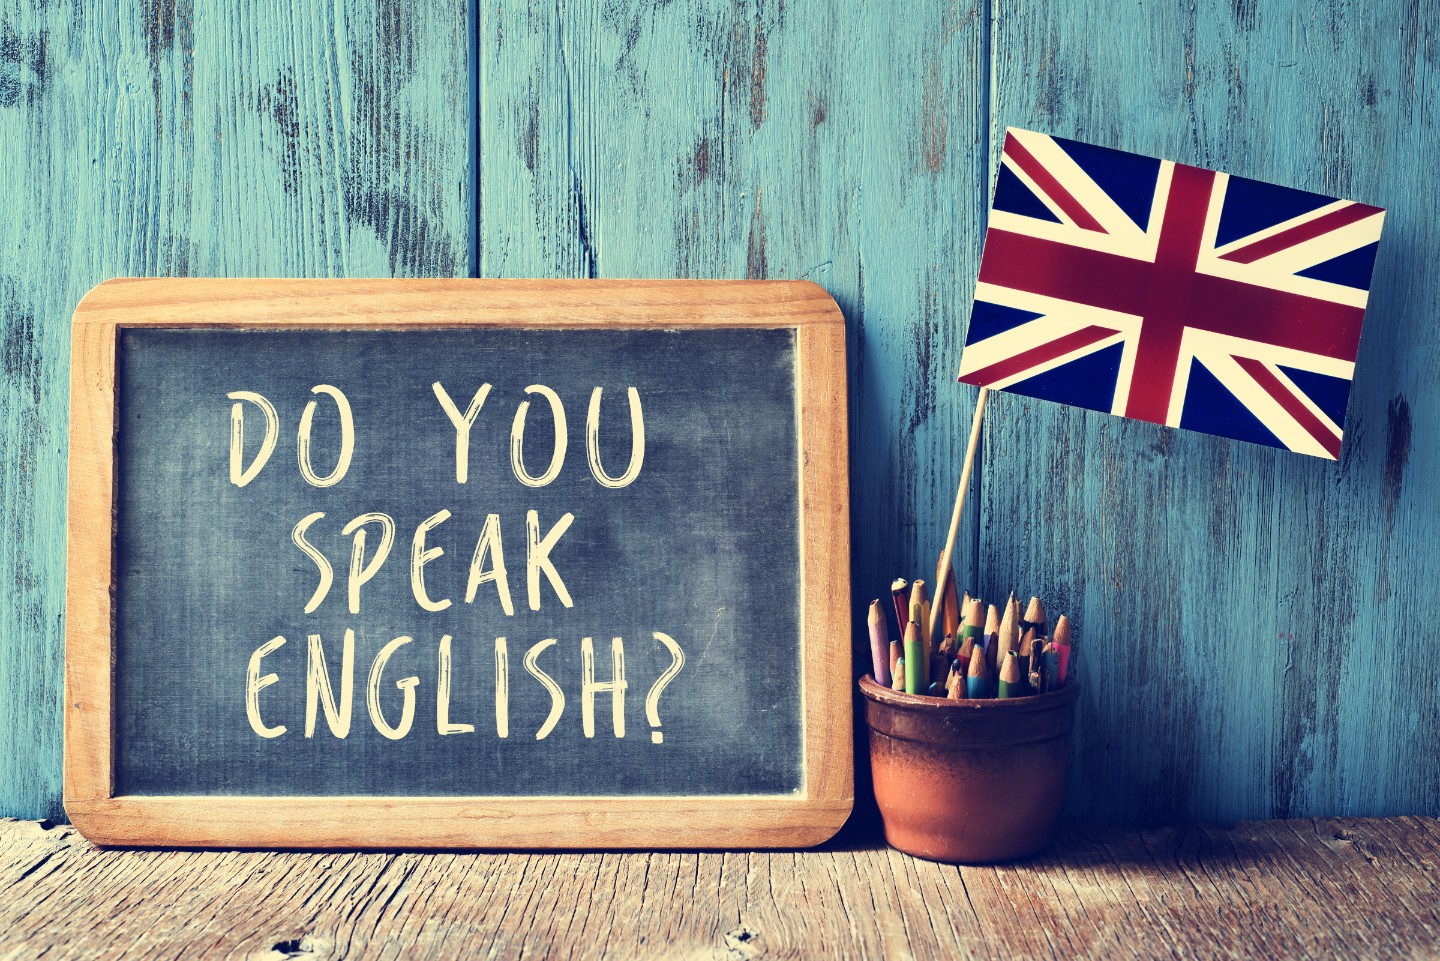 英単語を覚えれば、最低限の英会話はできる